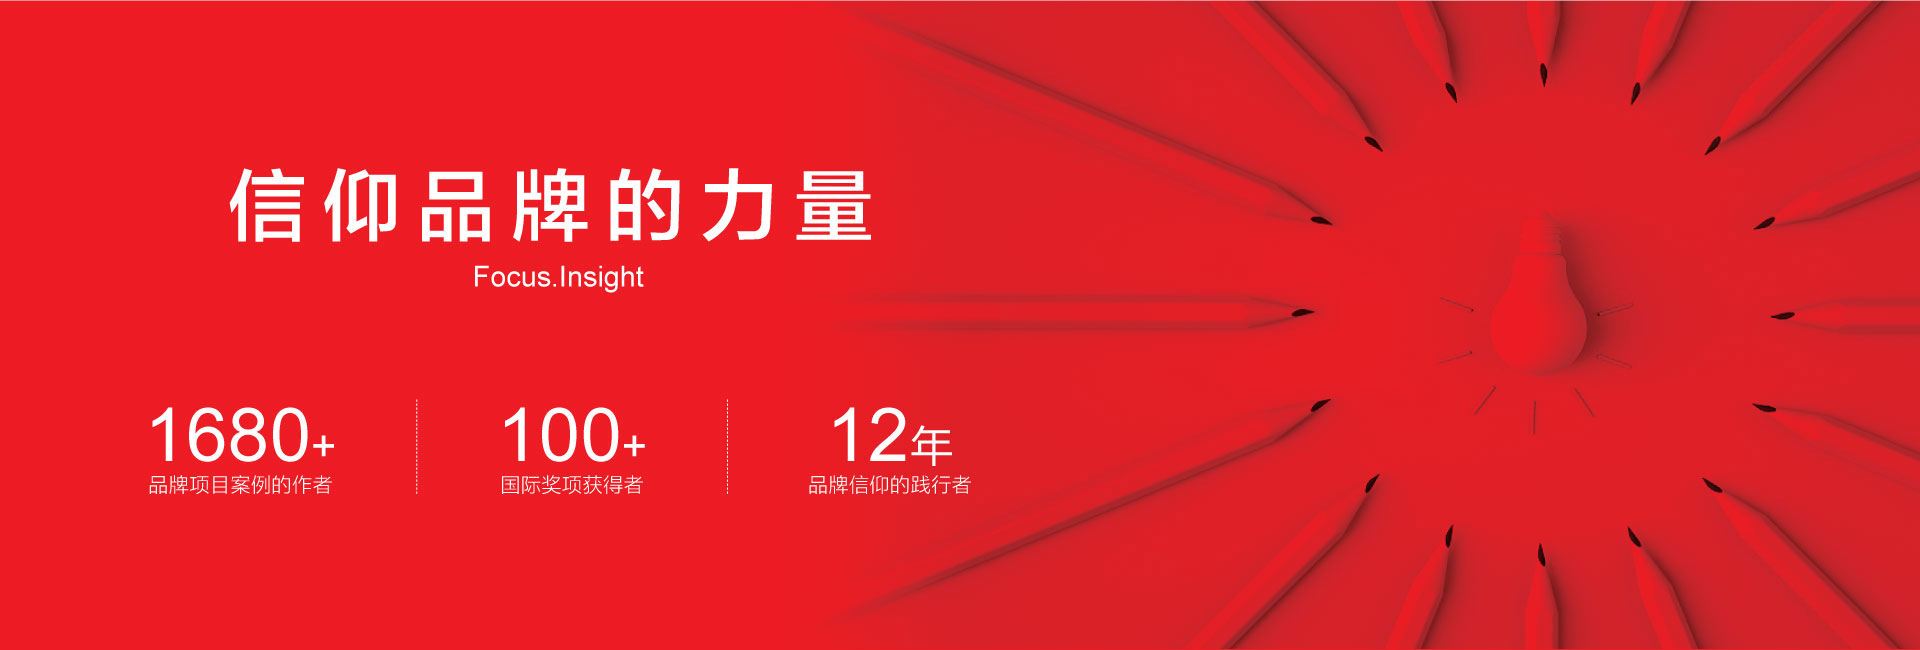 广州顶尖的广告设计公司-案例1